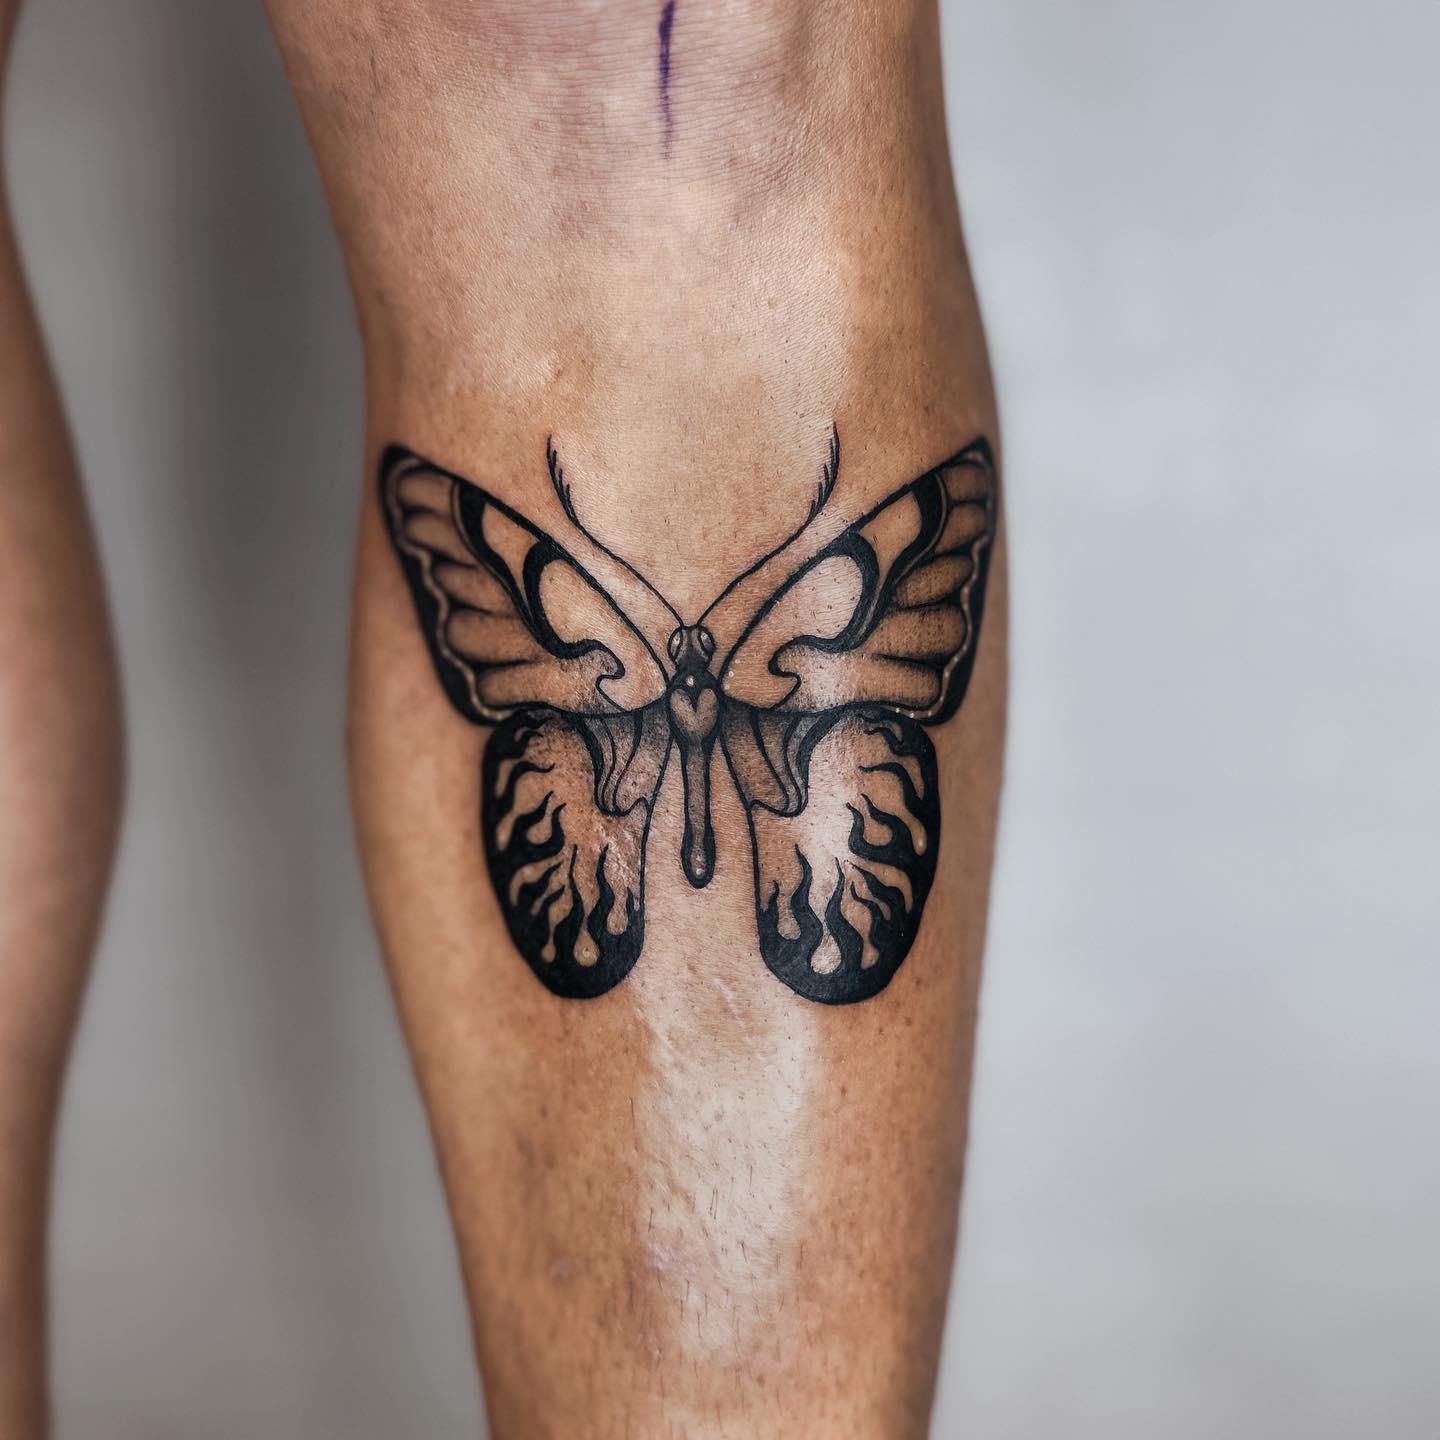 Butterfly tattoo men thigh